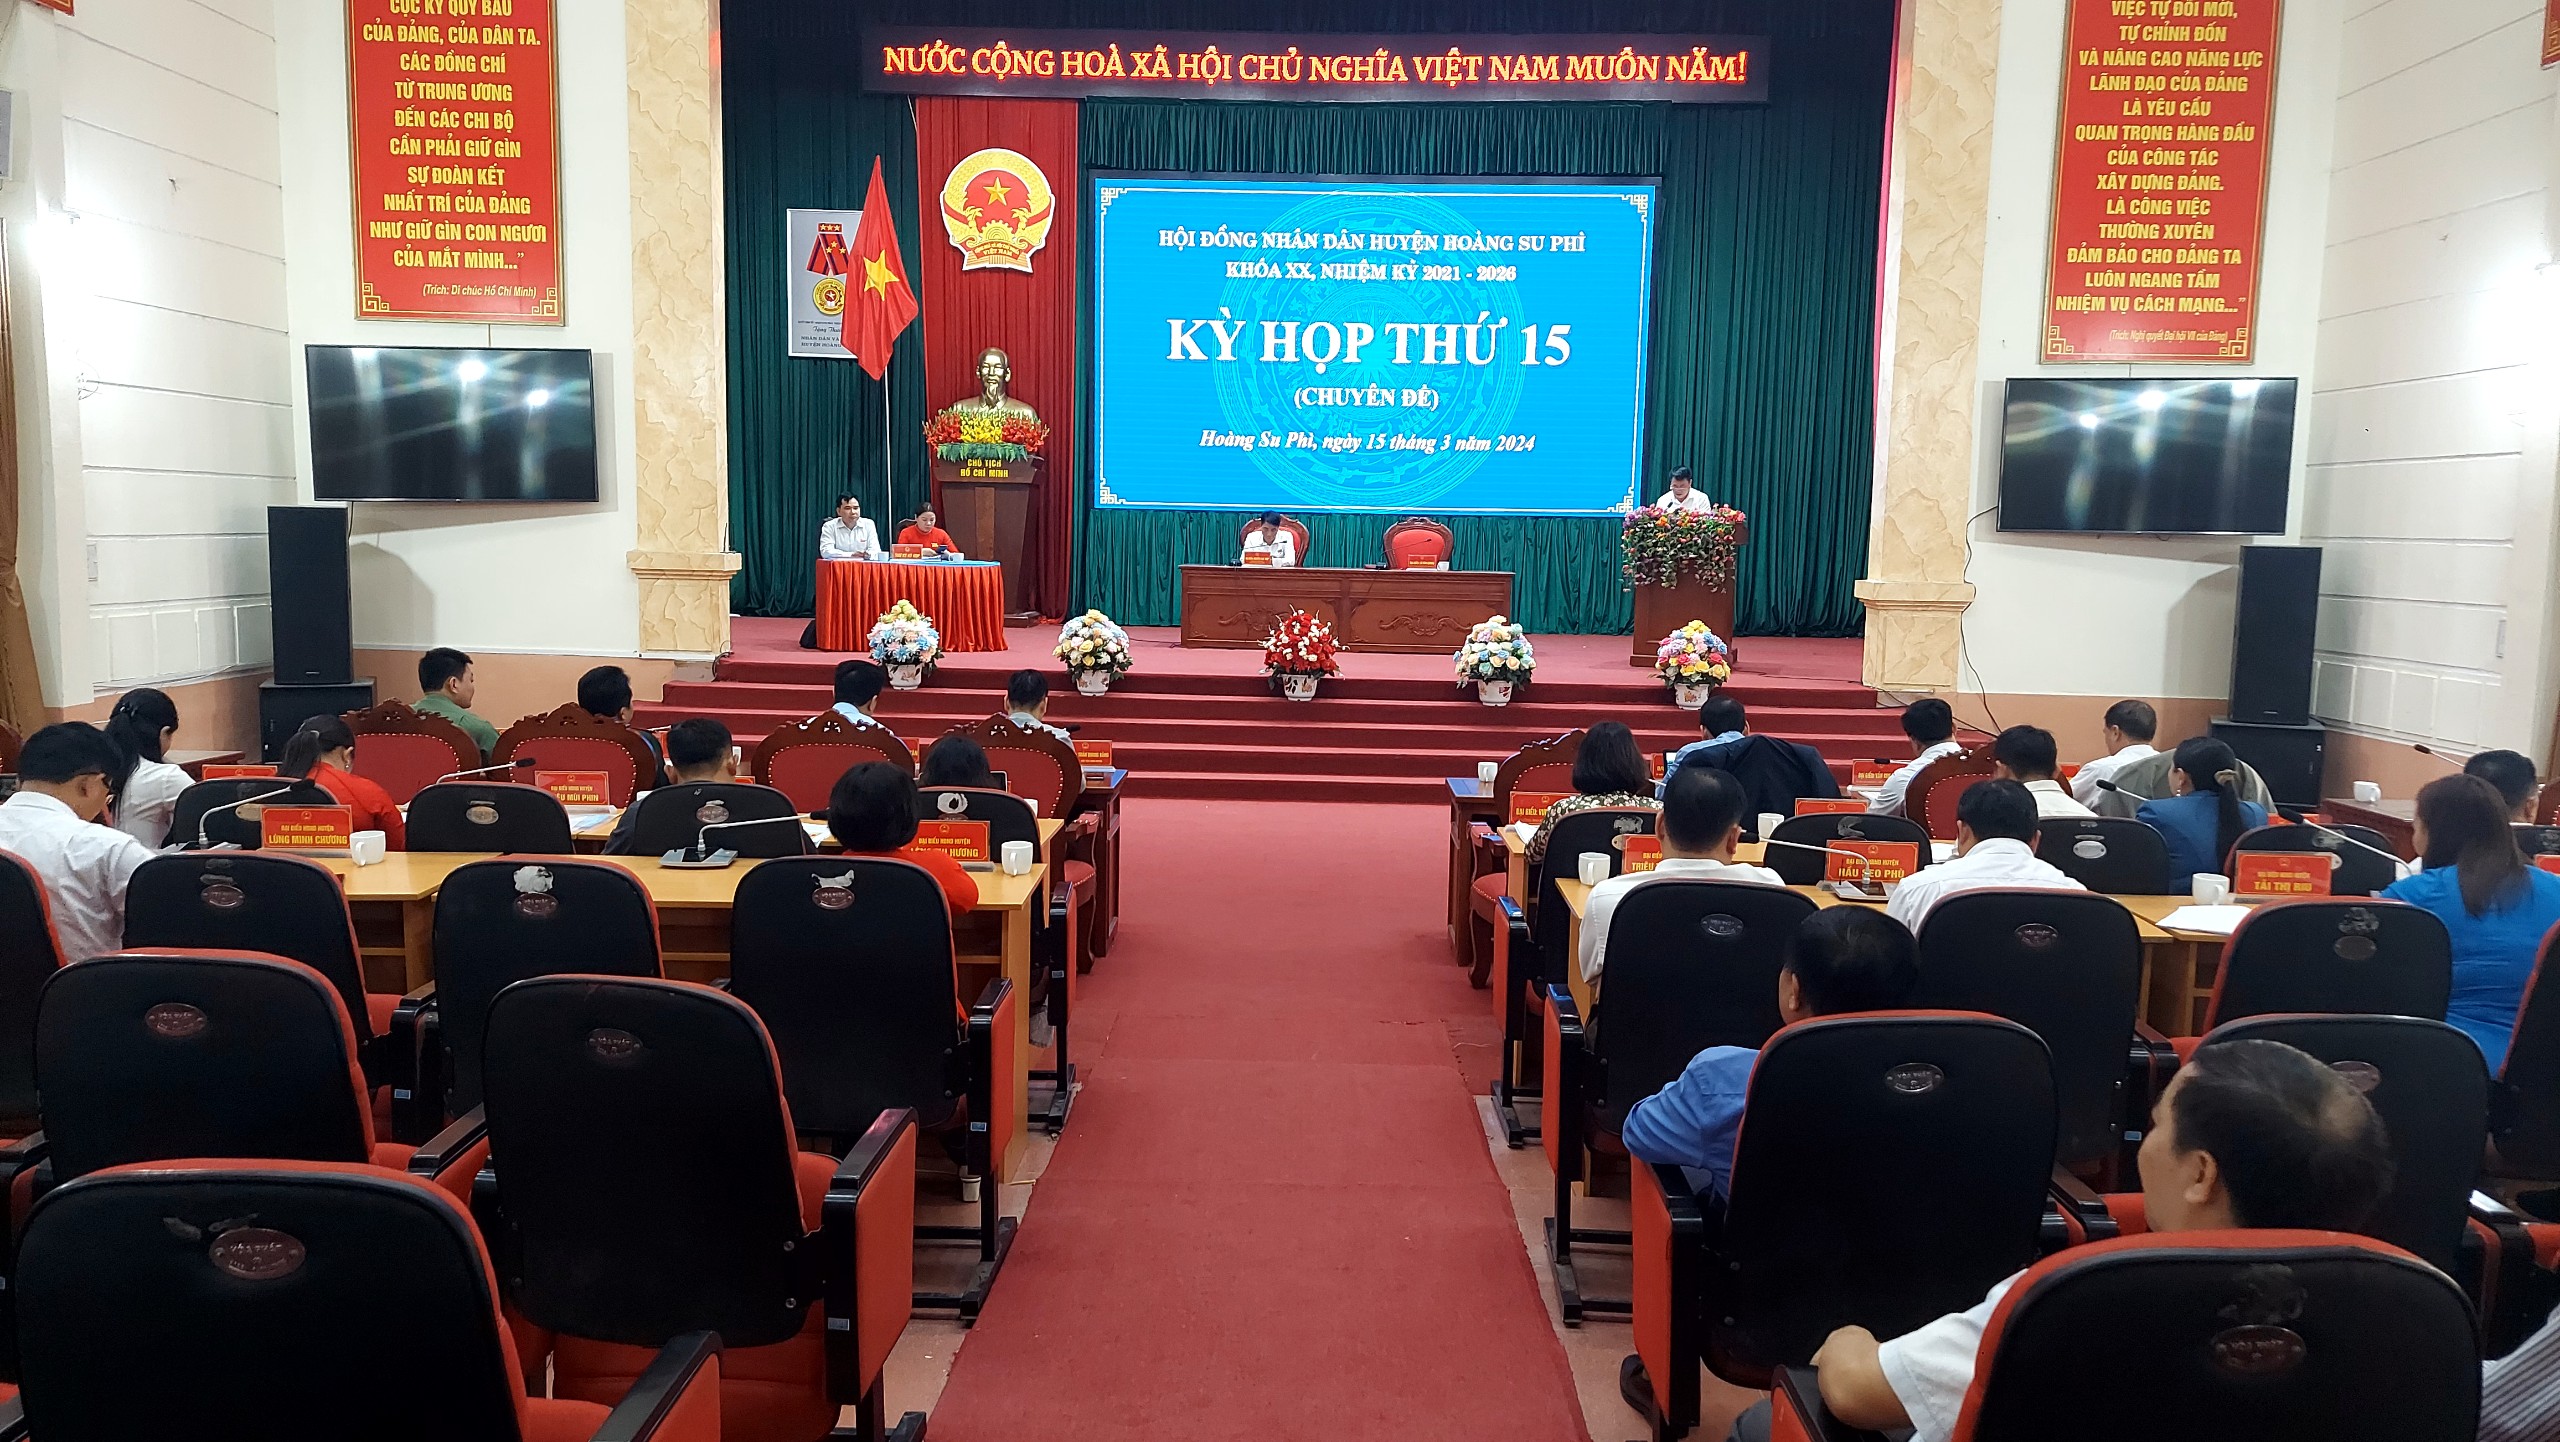 HĐND huyện Hoàng Su Phì tổ chức Kỳ họp thứ 15 (Chuyên đề)